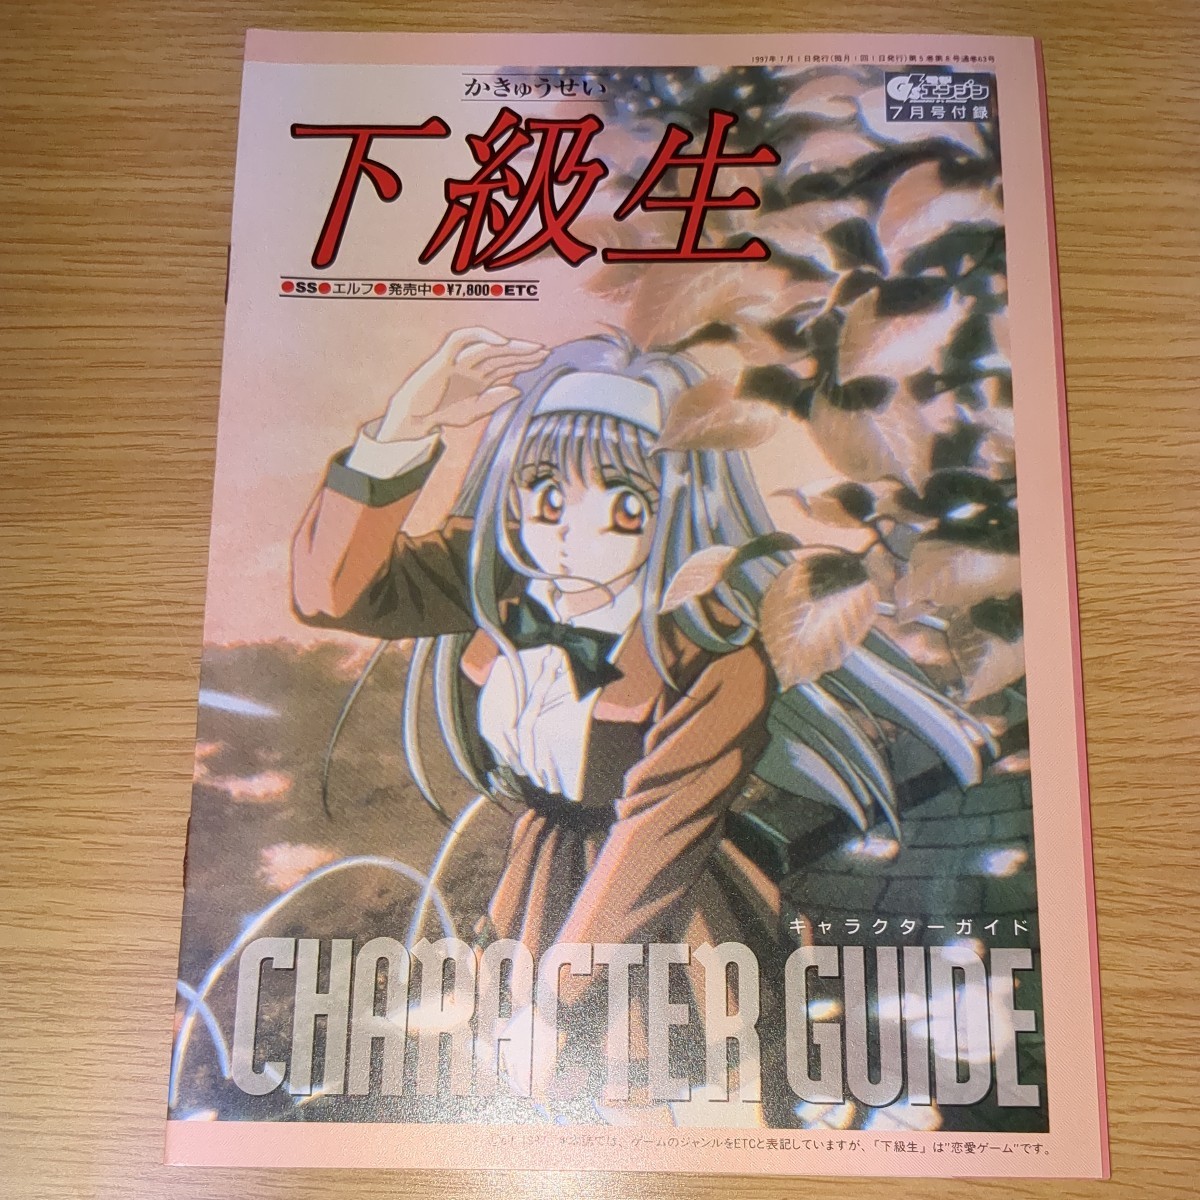 雑誌付録 電撃G'sエンジン 1997年 7月 セガサターン 下級生 キャラクターコレクション 当時物 非売品_画像1